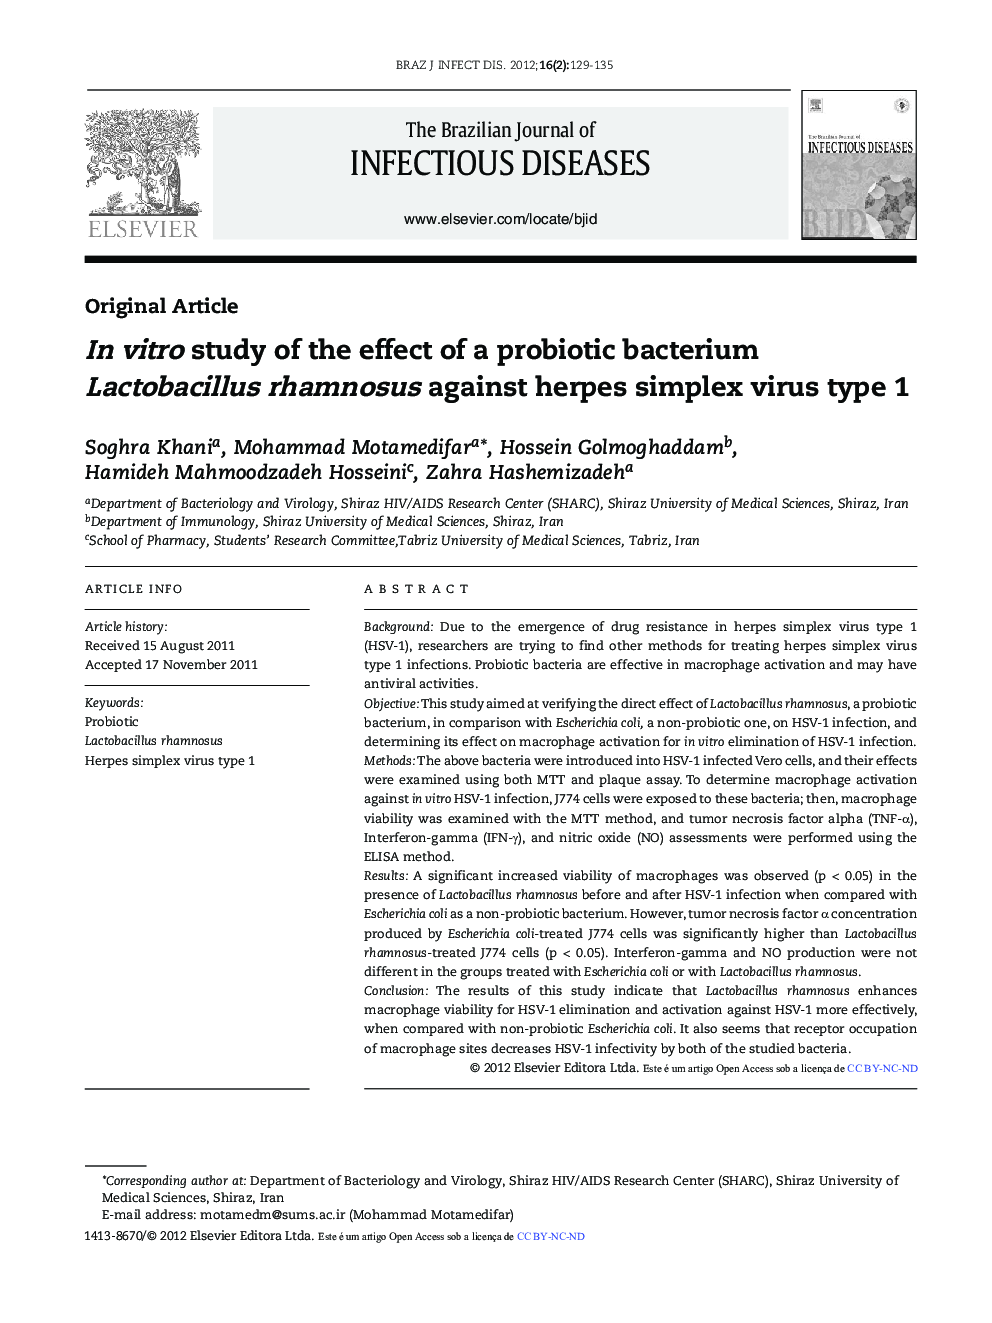 In vitro study of the effect of a probiotic bacterium Lactobacillus rhamnosus against herpes simplex virus type 1